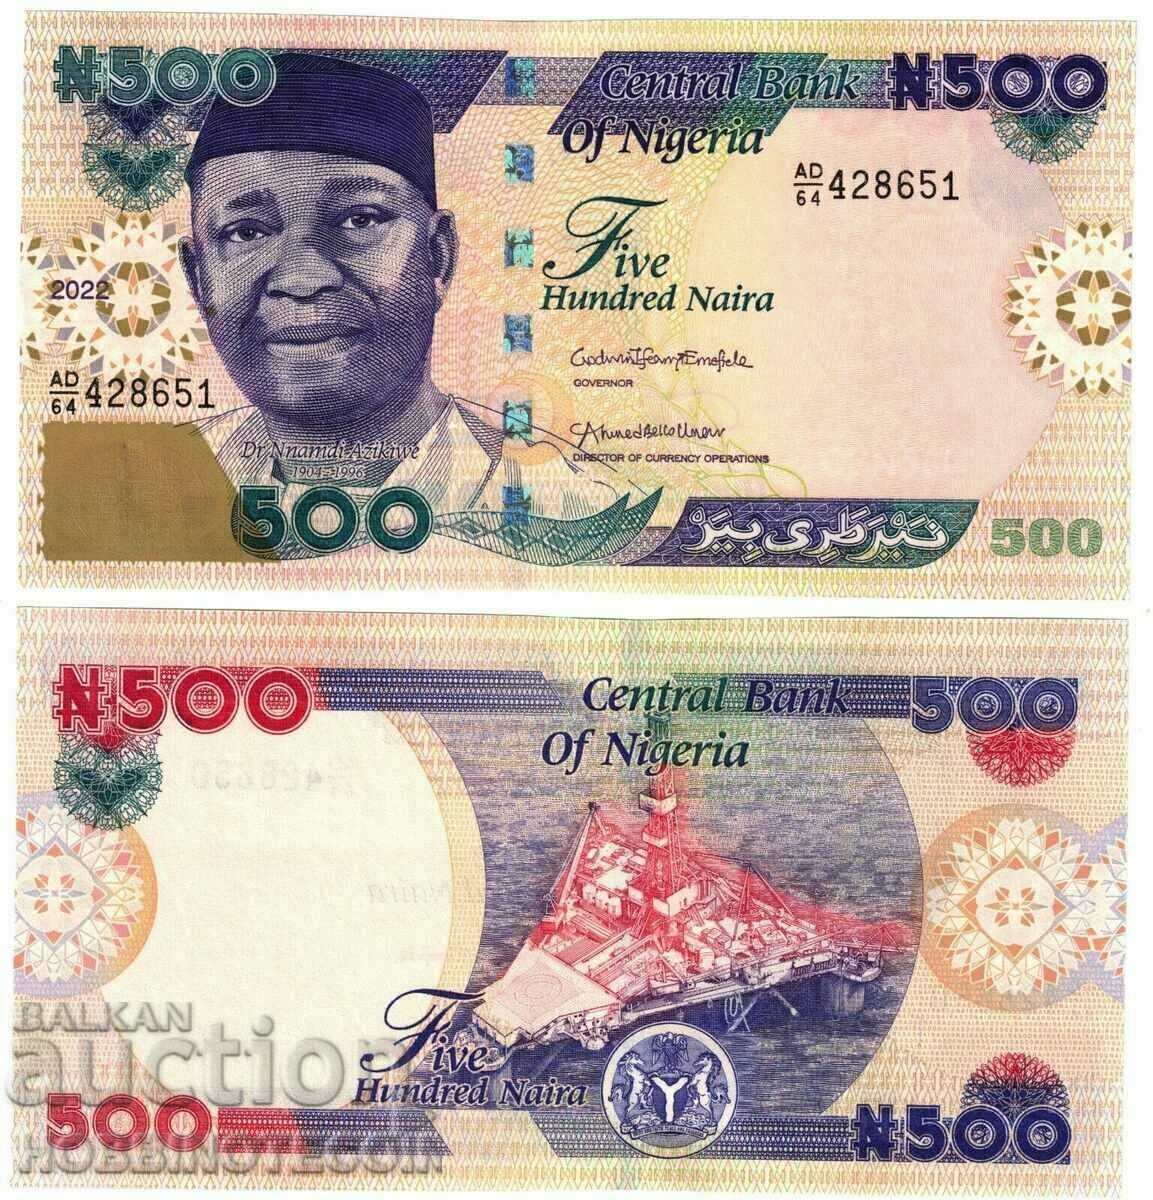 NIGERIA NIGERIA 500 NAIRA έκδοση - τεύχος 2022 NEW UNC